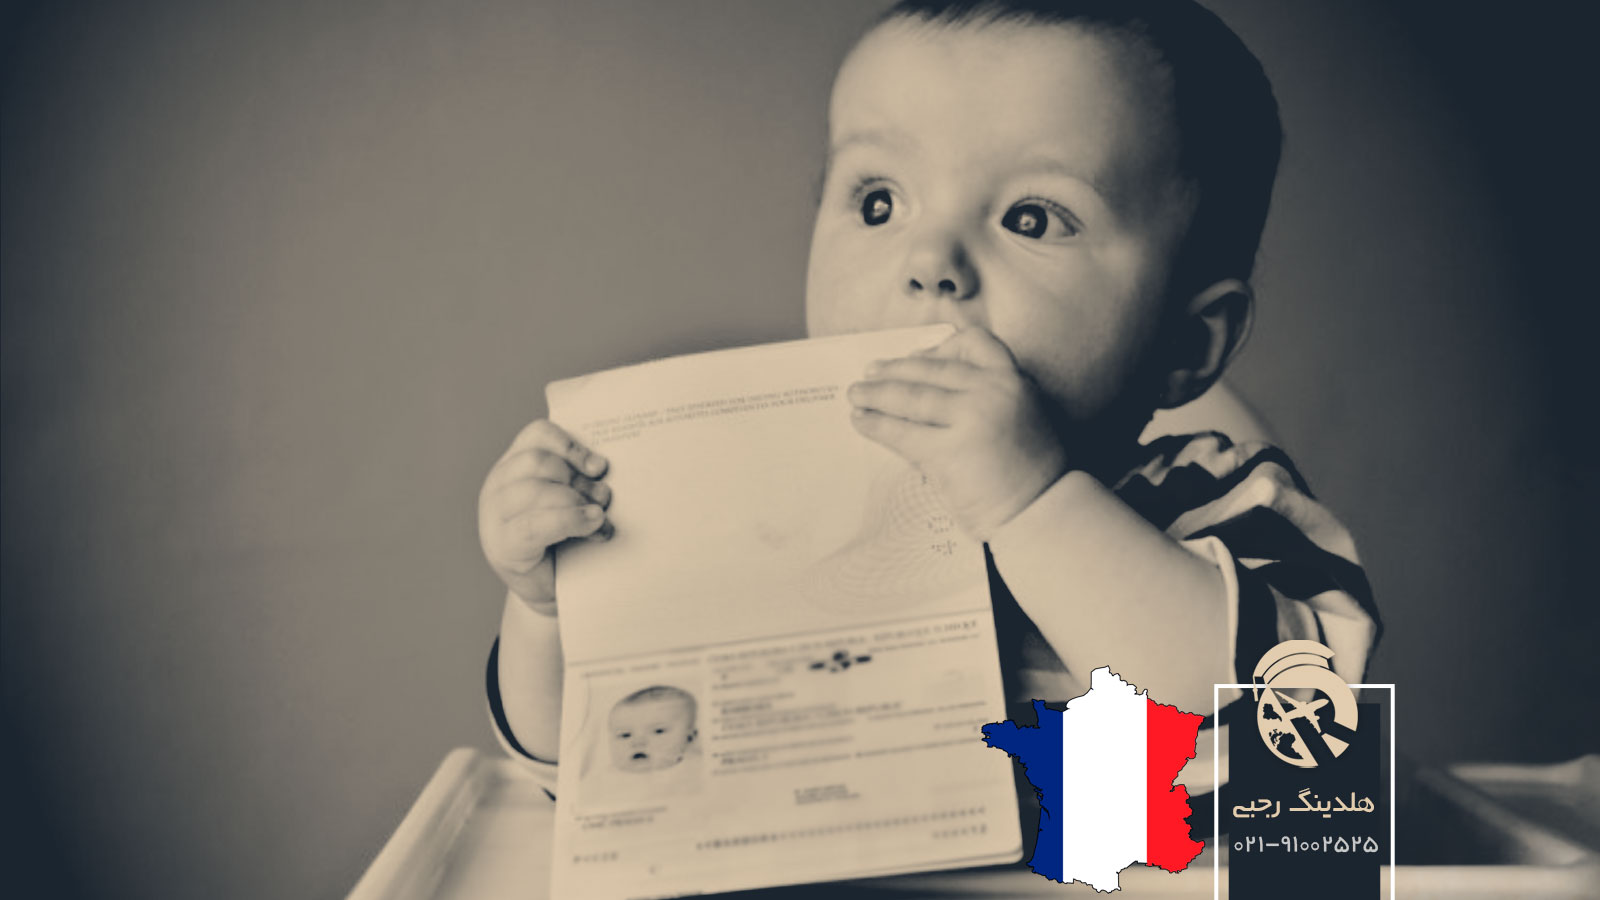 اقامت و تابعیت فرانسه با تولد فرزند